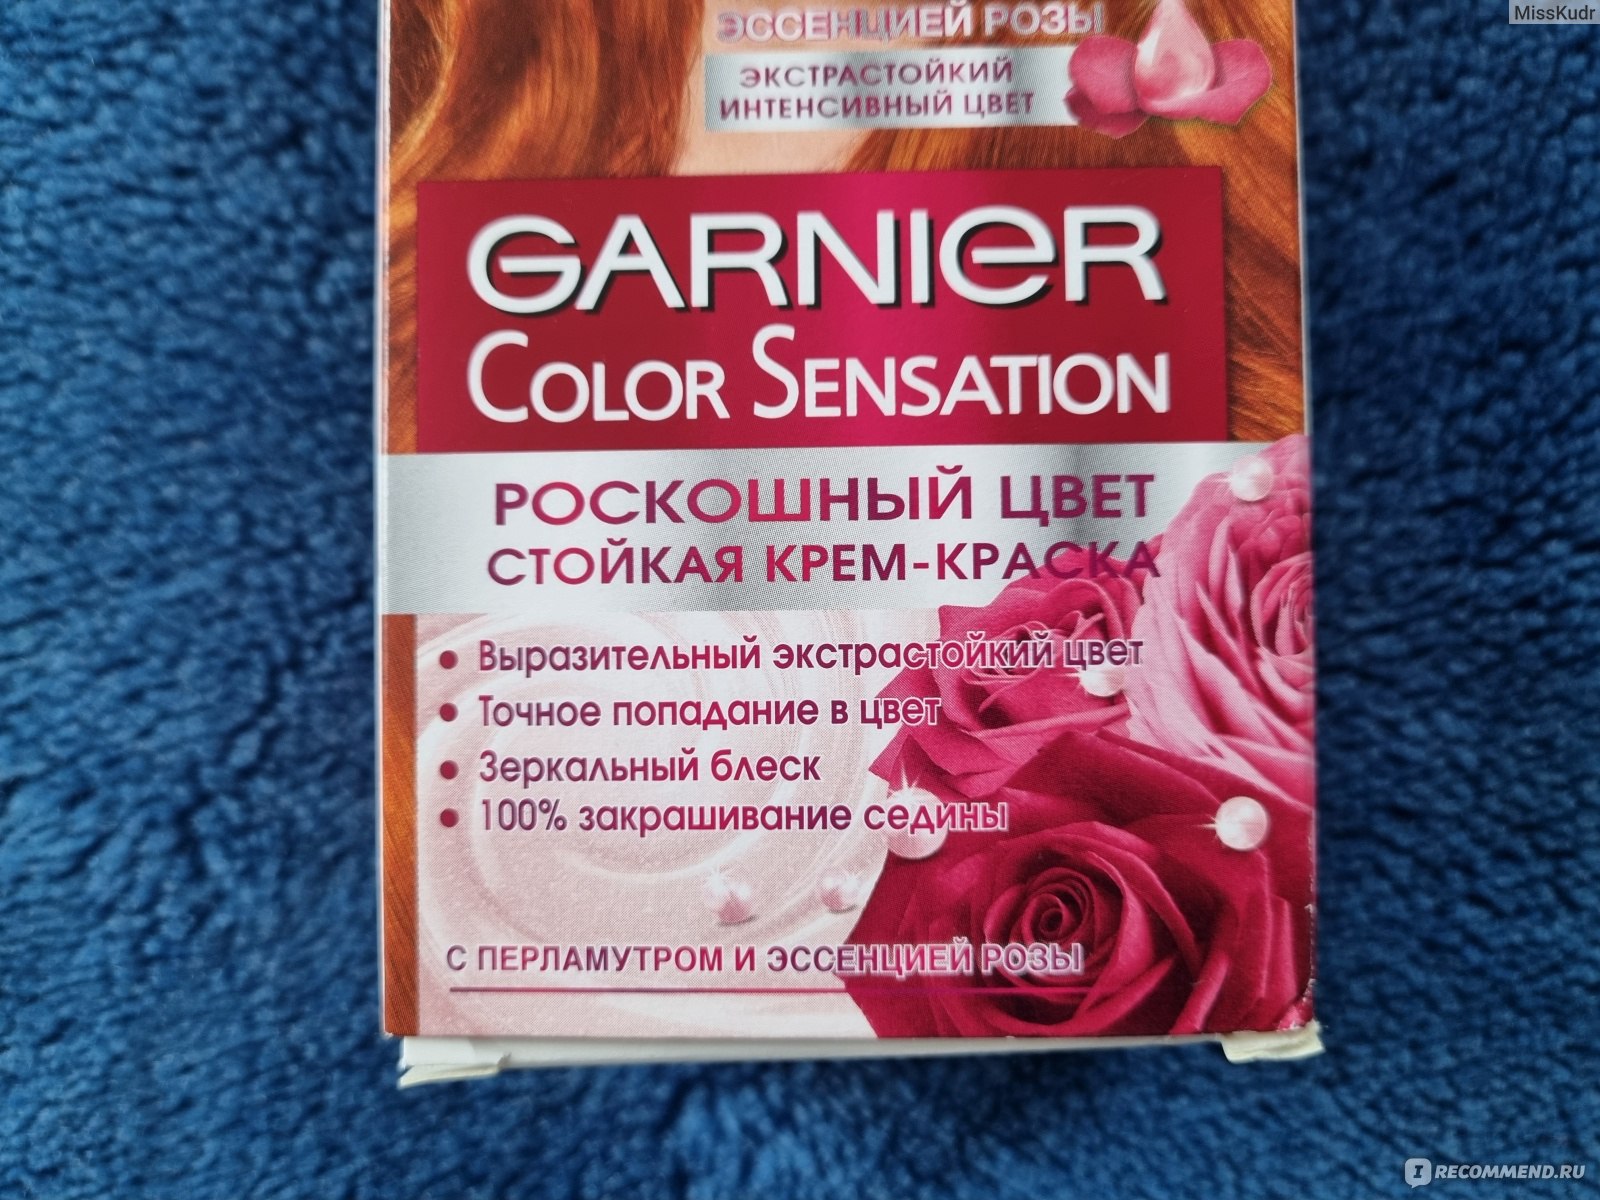 Краска Garnier 101 Color Sensation платиновый блонд